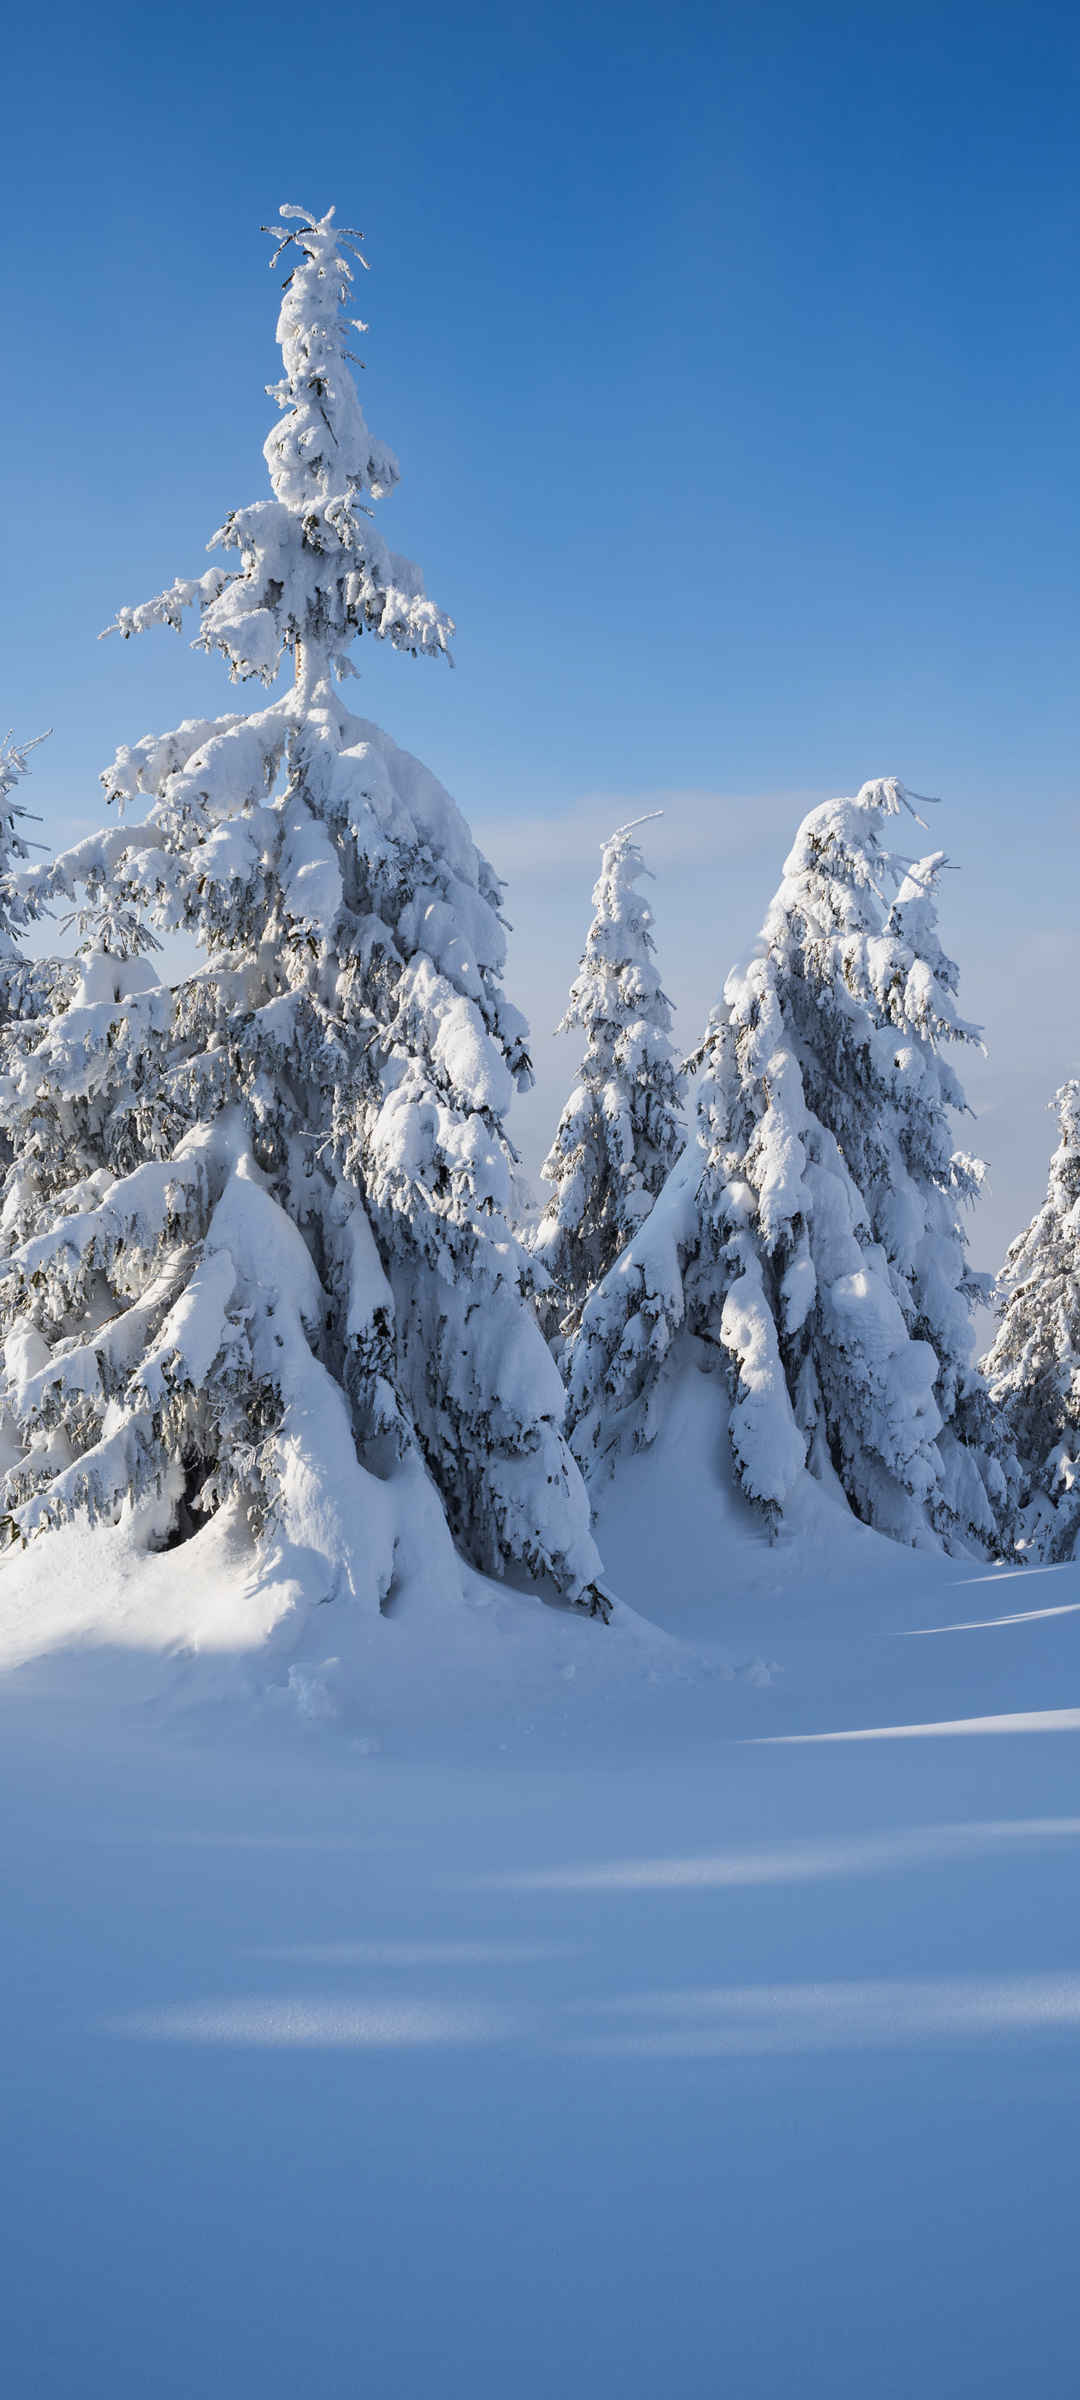 大雪冬天的风景图